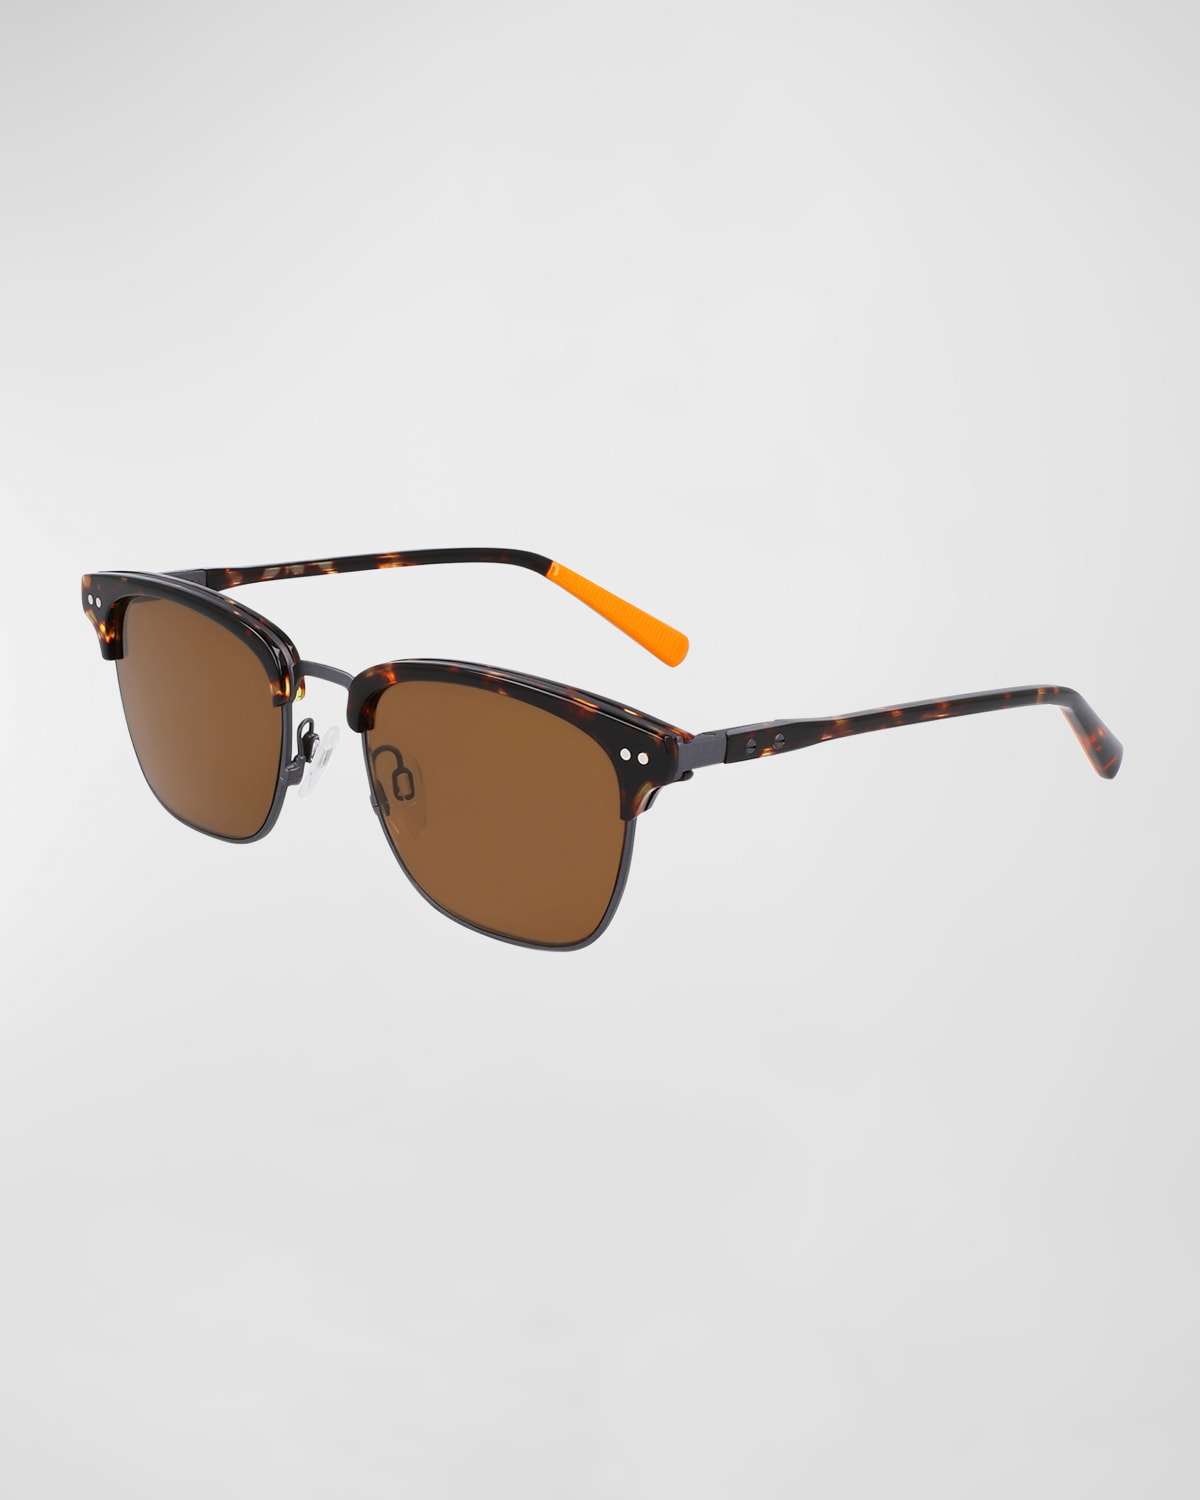 Men's Half-Rim Square Sunglasses